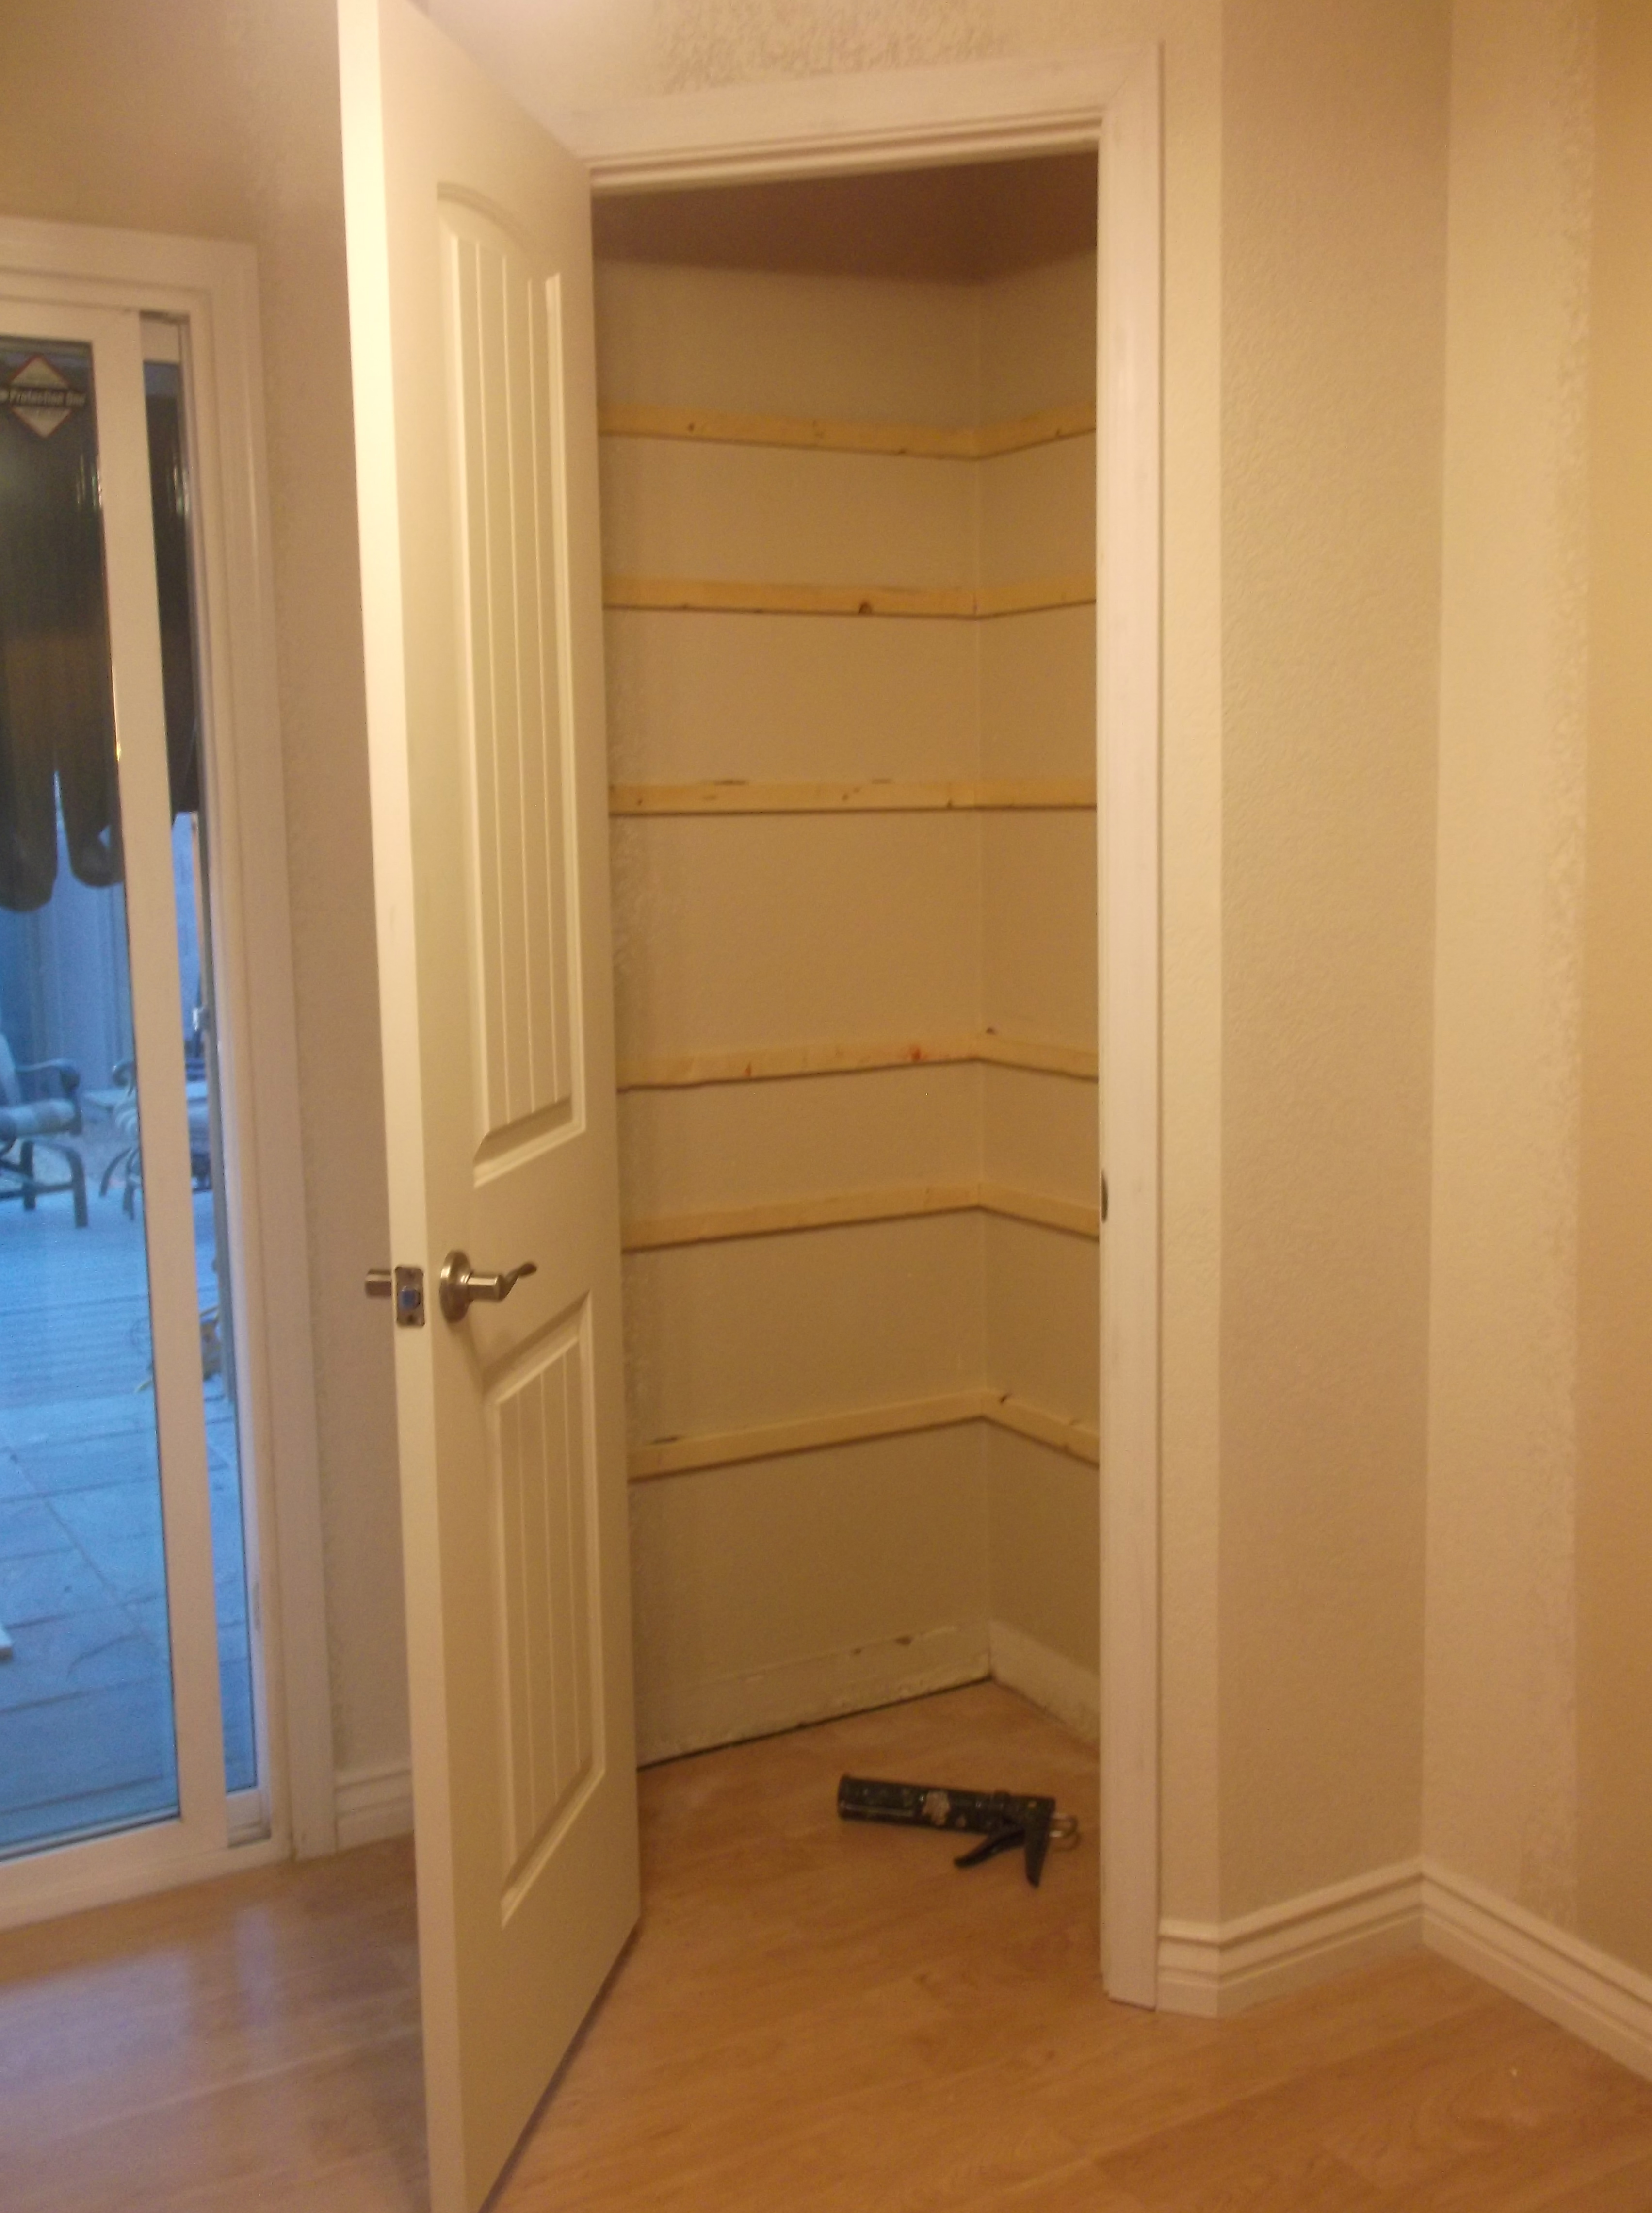 Finished Shelf Cleats